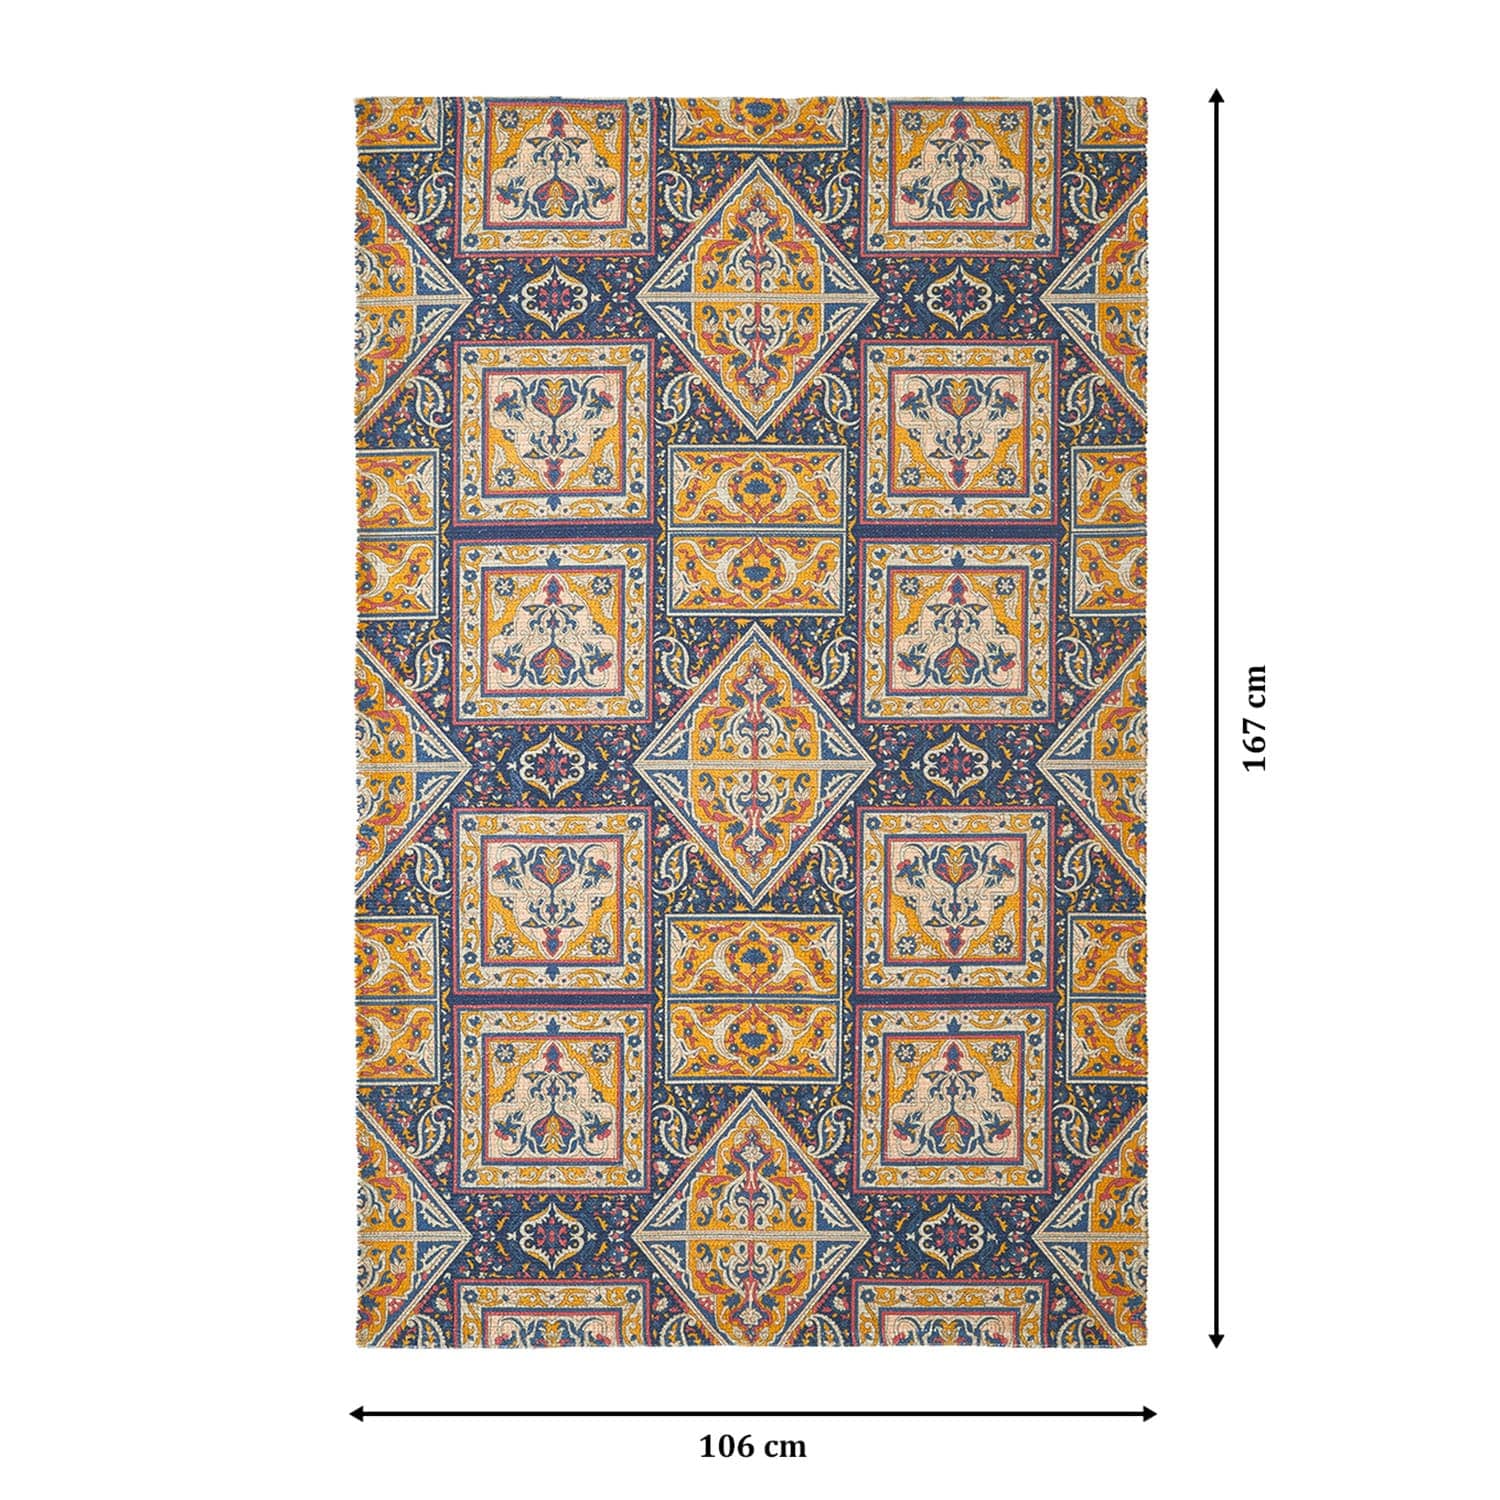 Mona-B Bag Mona B Printed Vintage Dhurrie Carpet Rug Runner Floor Mat for Living Room Bedroom: 3.5 X 5.5 Feet Multi Color- PR-101